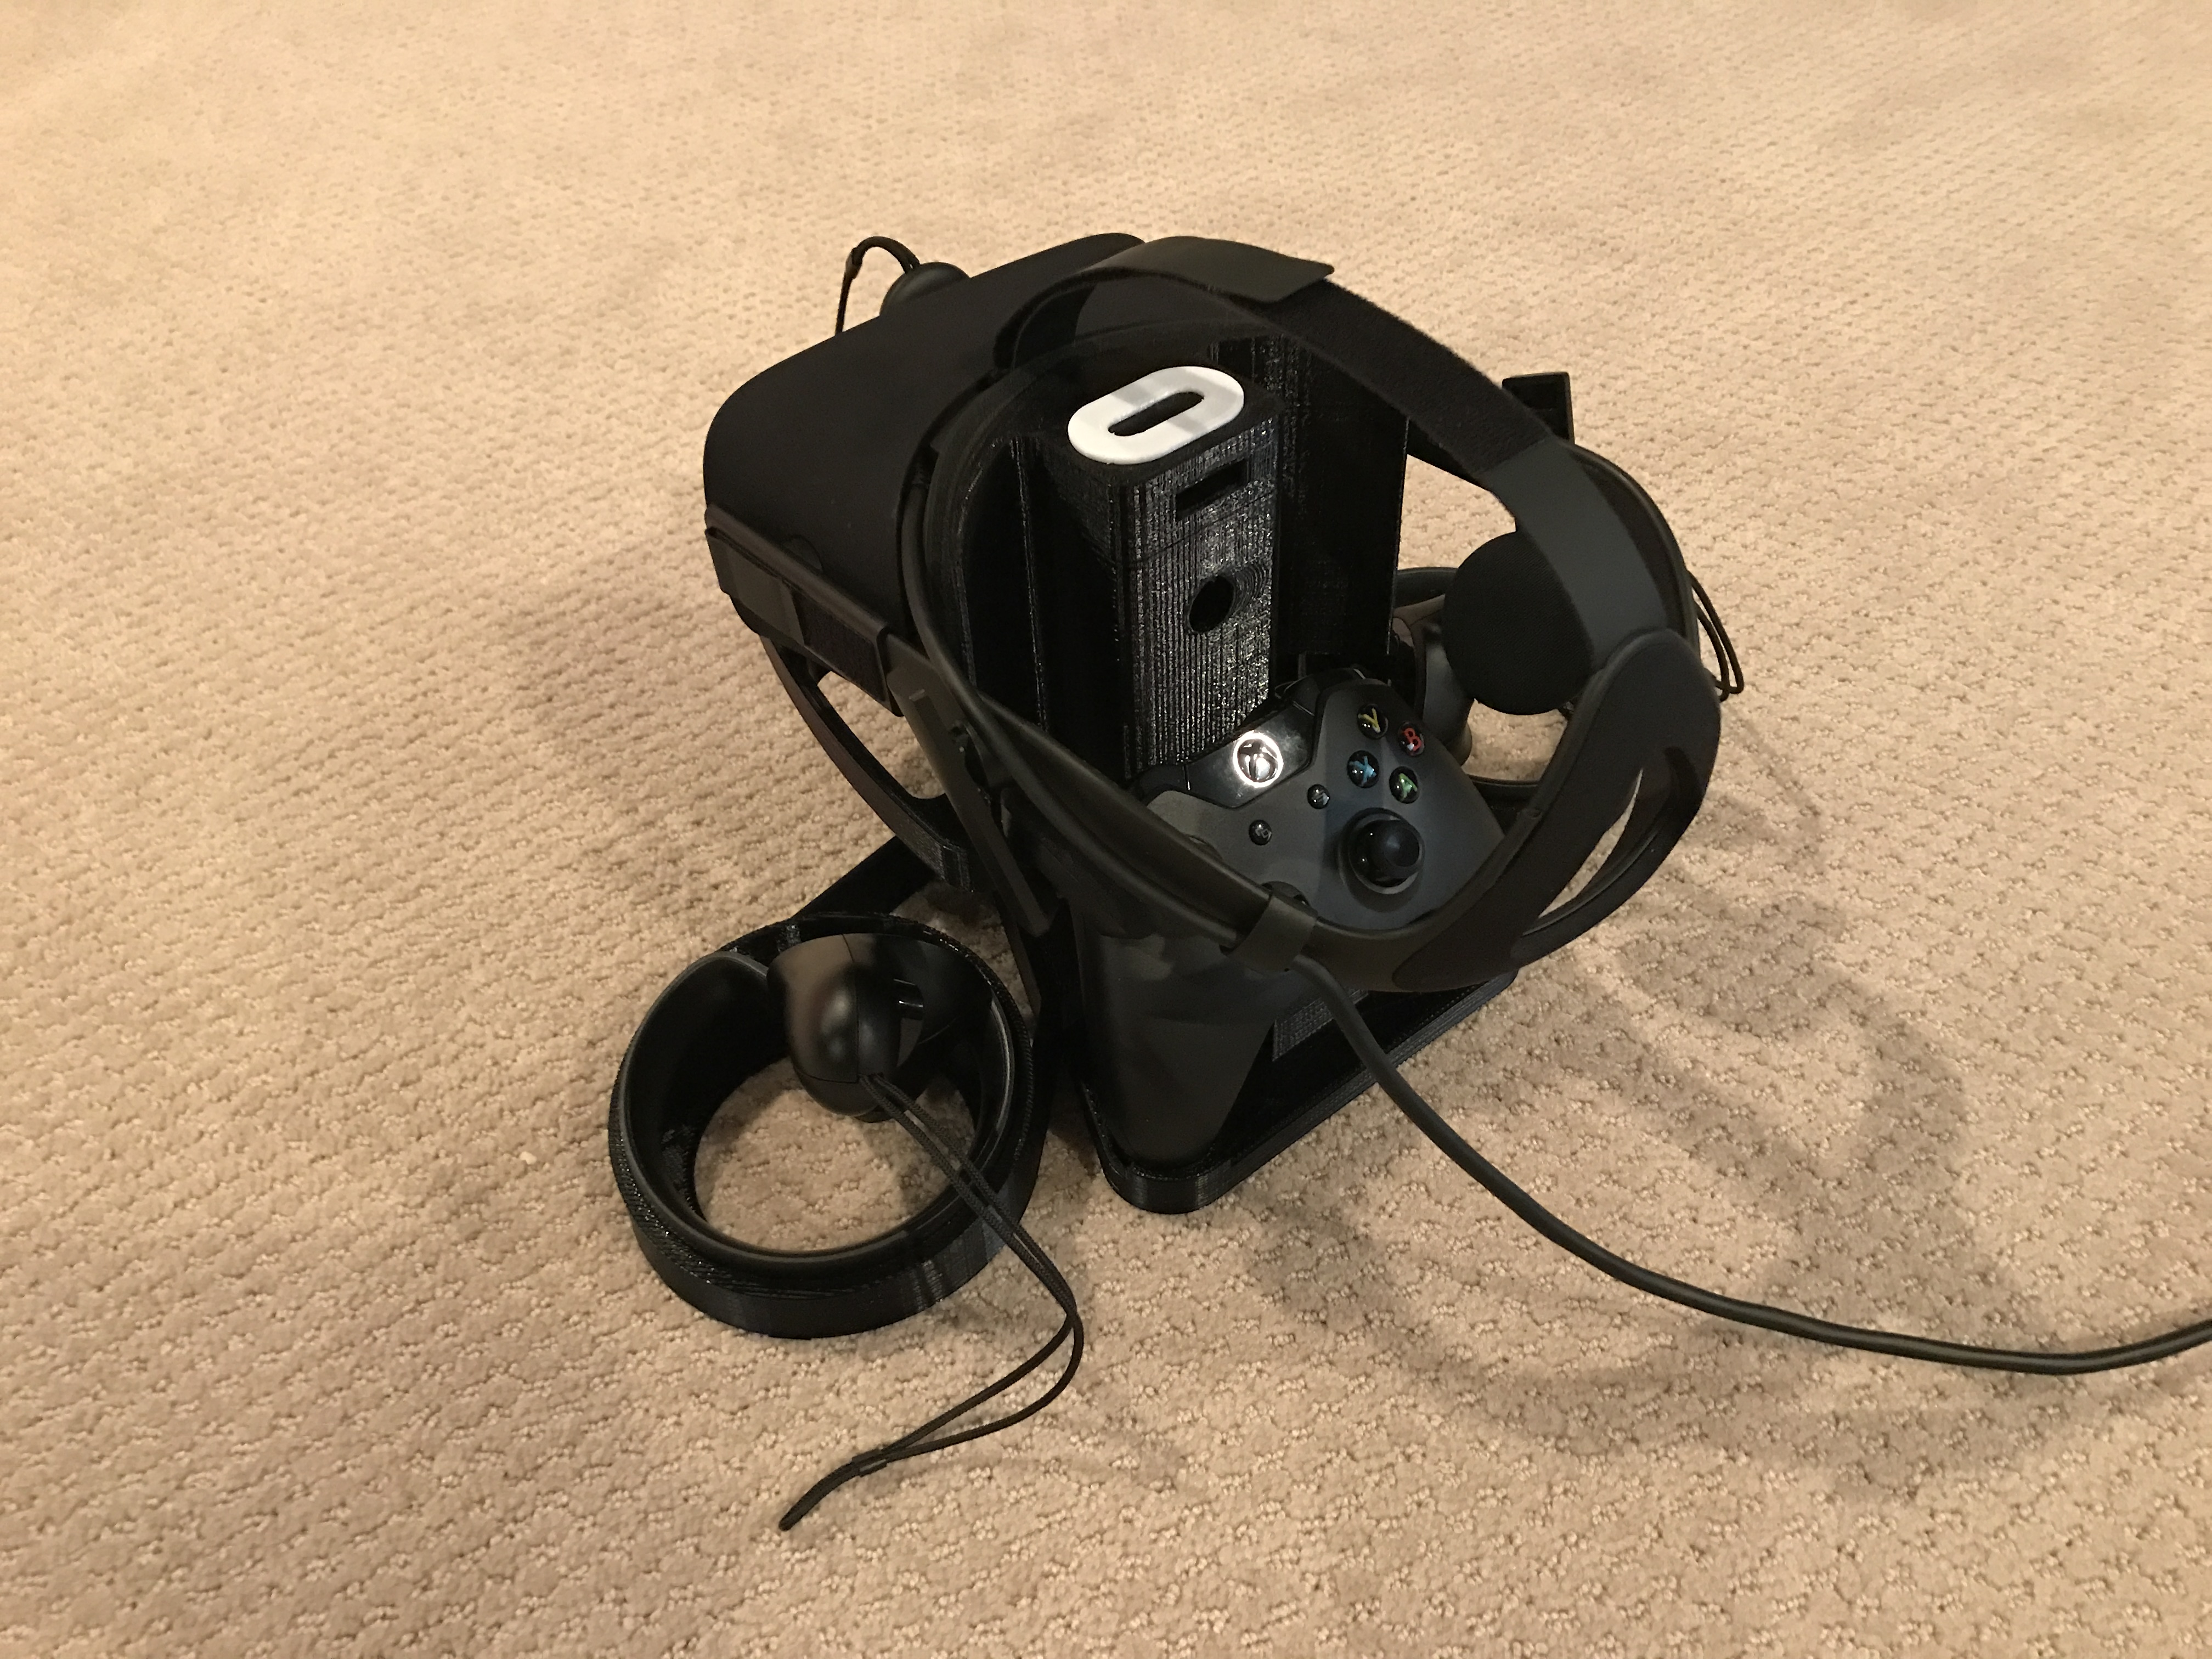 Oculus Rift CV1 Stand (Version 2)